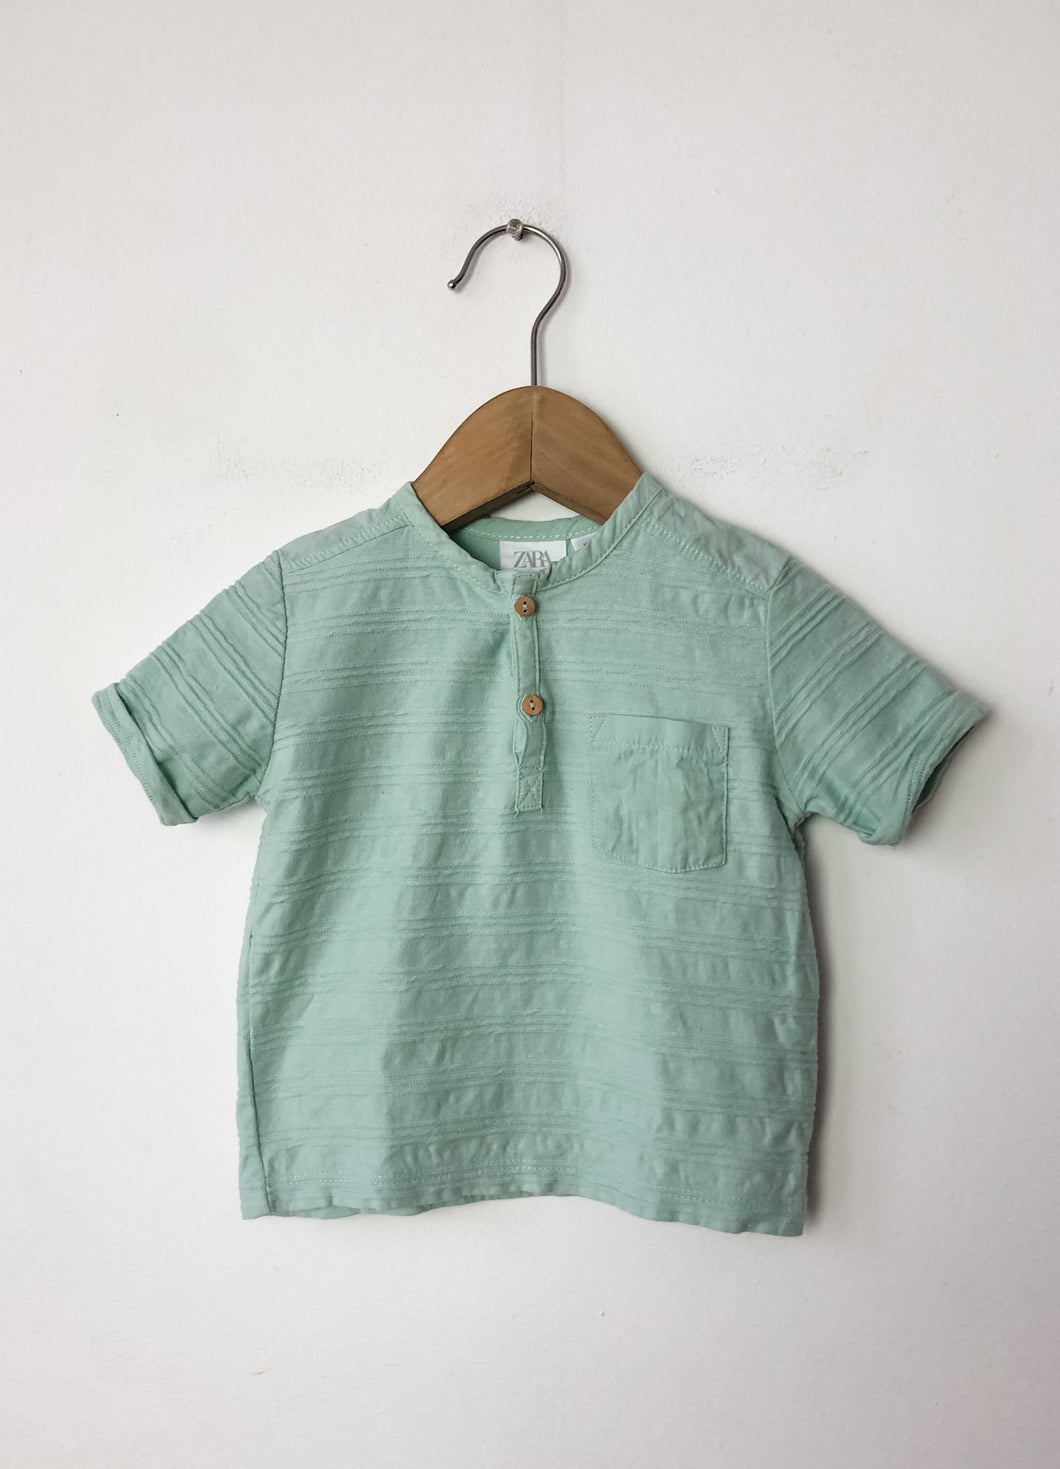 Boys Green Zara Shirt Size 9-12 Months